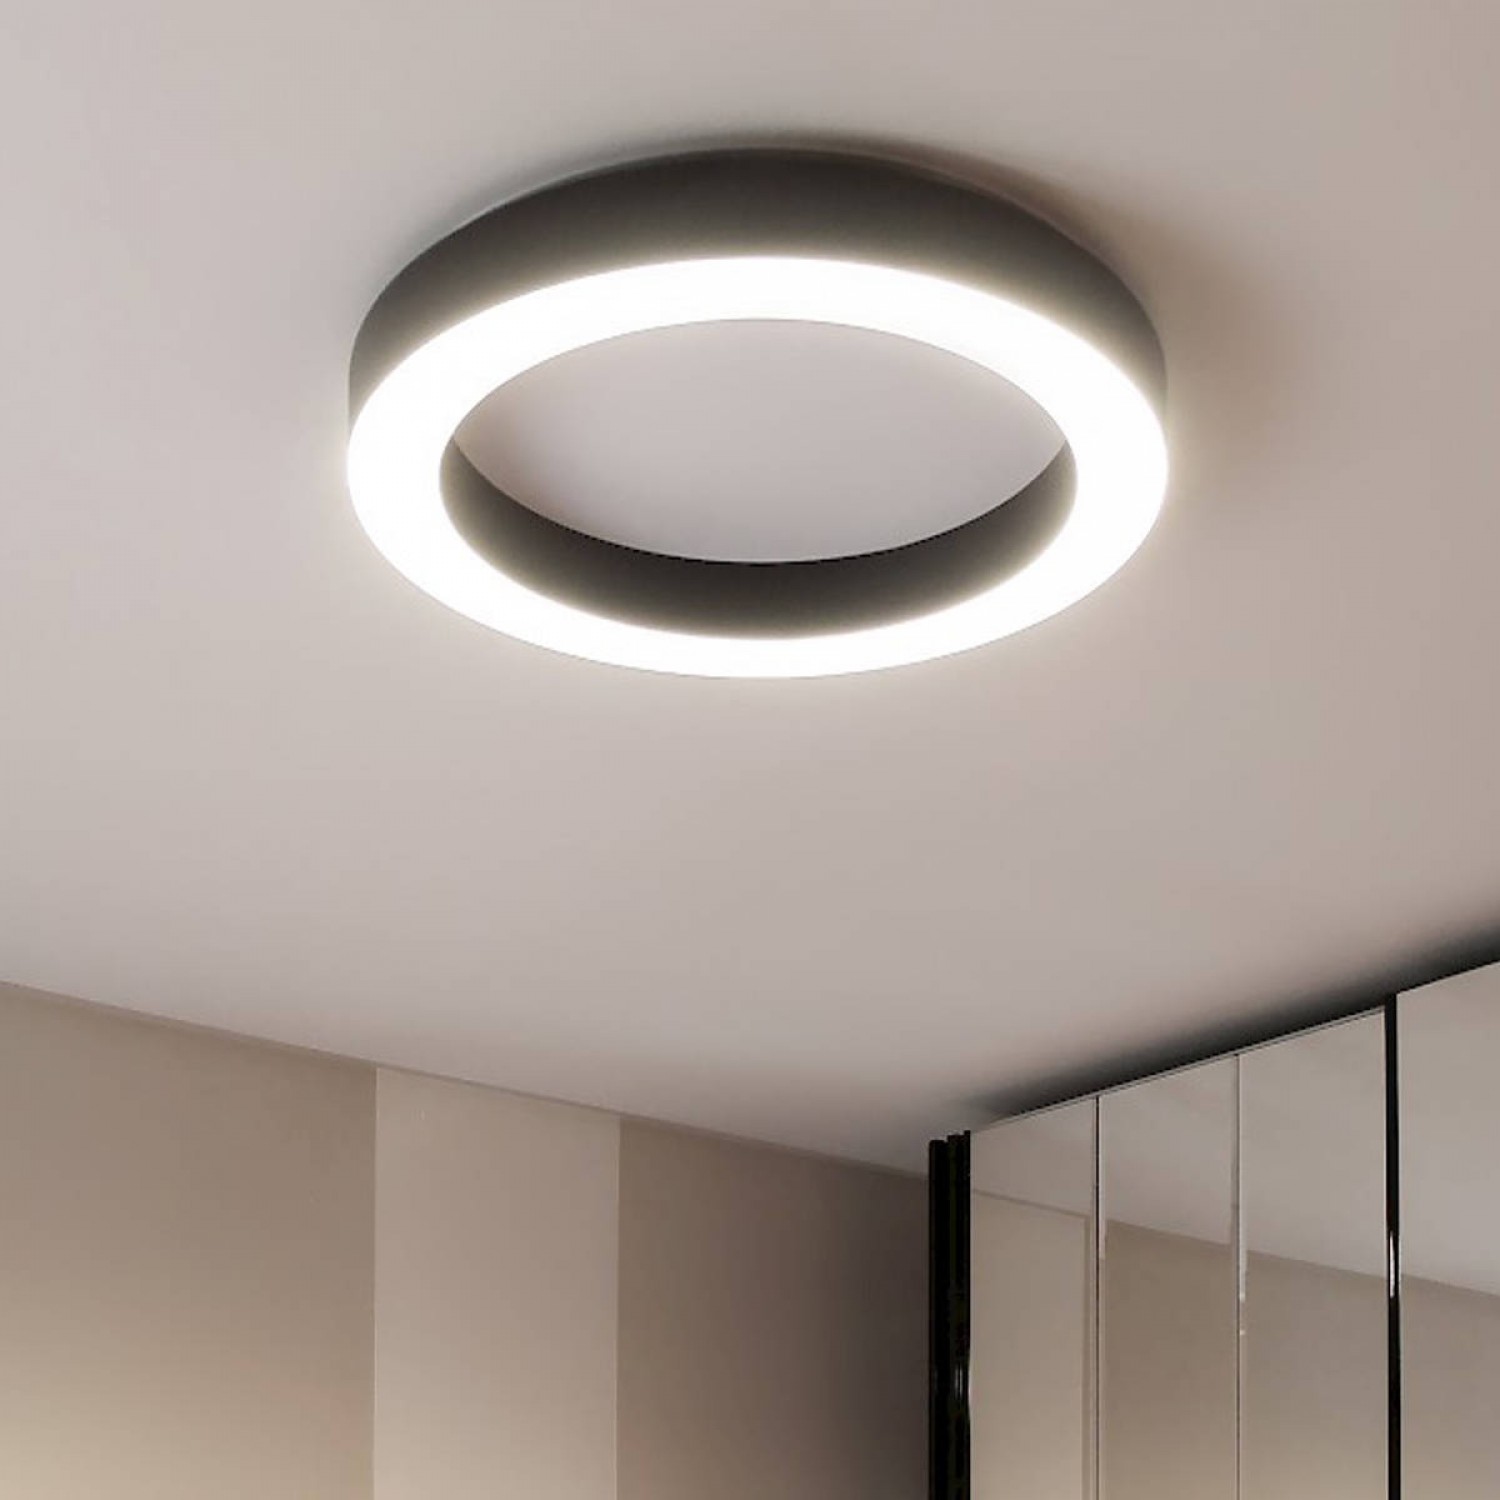 Plafoniera minimale con struttura in alluminio,dalla forma circolare a  forma di anello con colore bianco con luce a led ( 50W ) integrata Dimmerata